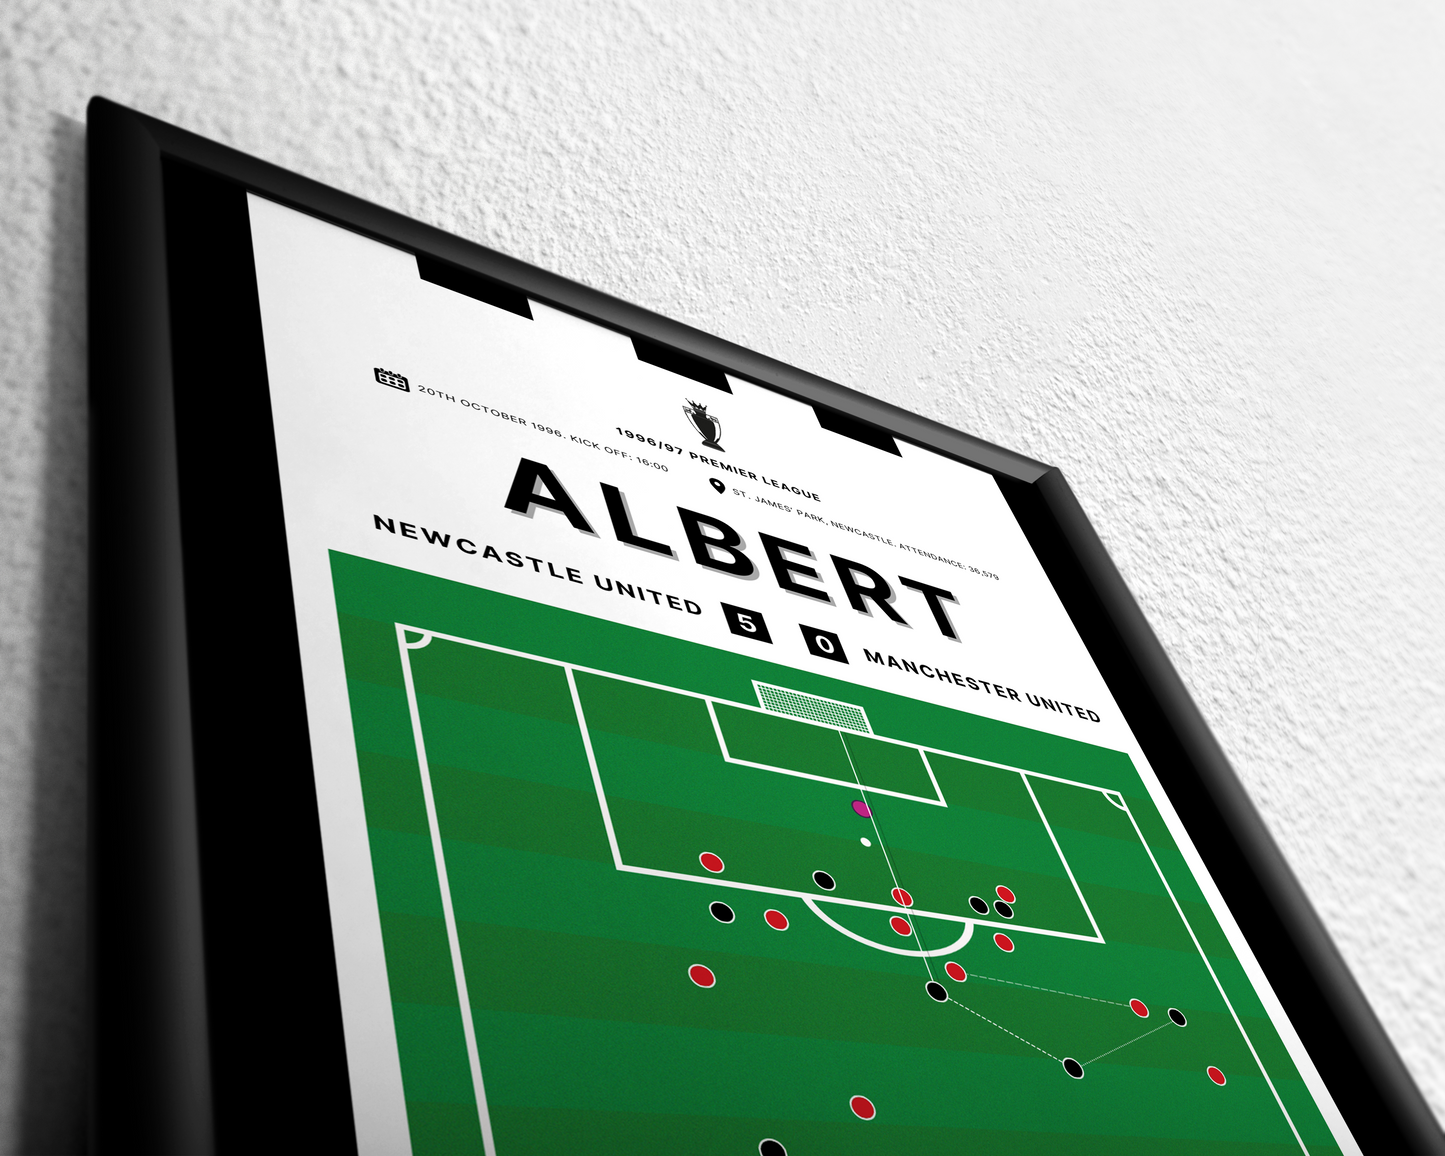 Albert's goal vs. Manchester United